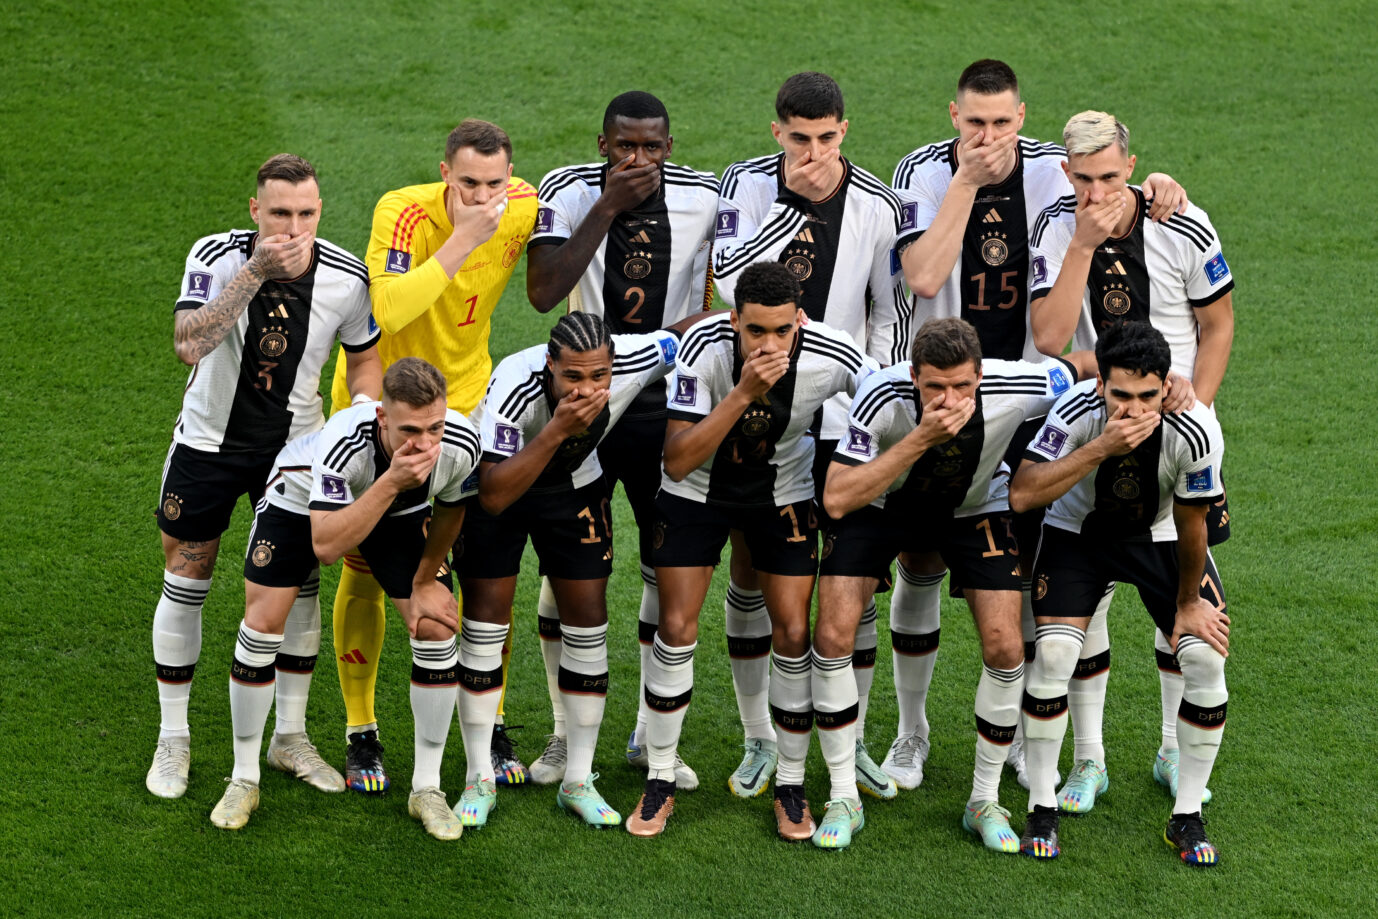 Die deutsche Fußball-Nationalmannschaft beim Spiel gegen Japan: Als stille Protestaktion hielten sich die Spieler die Münder zu